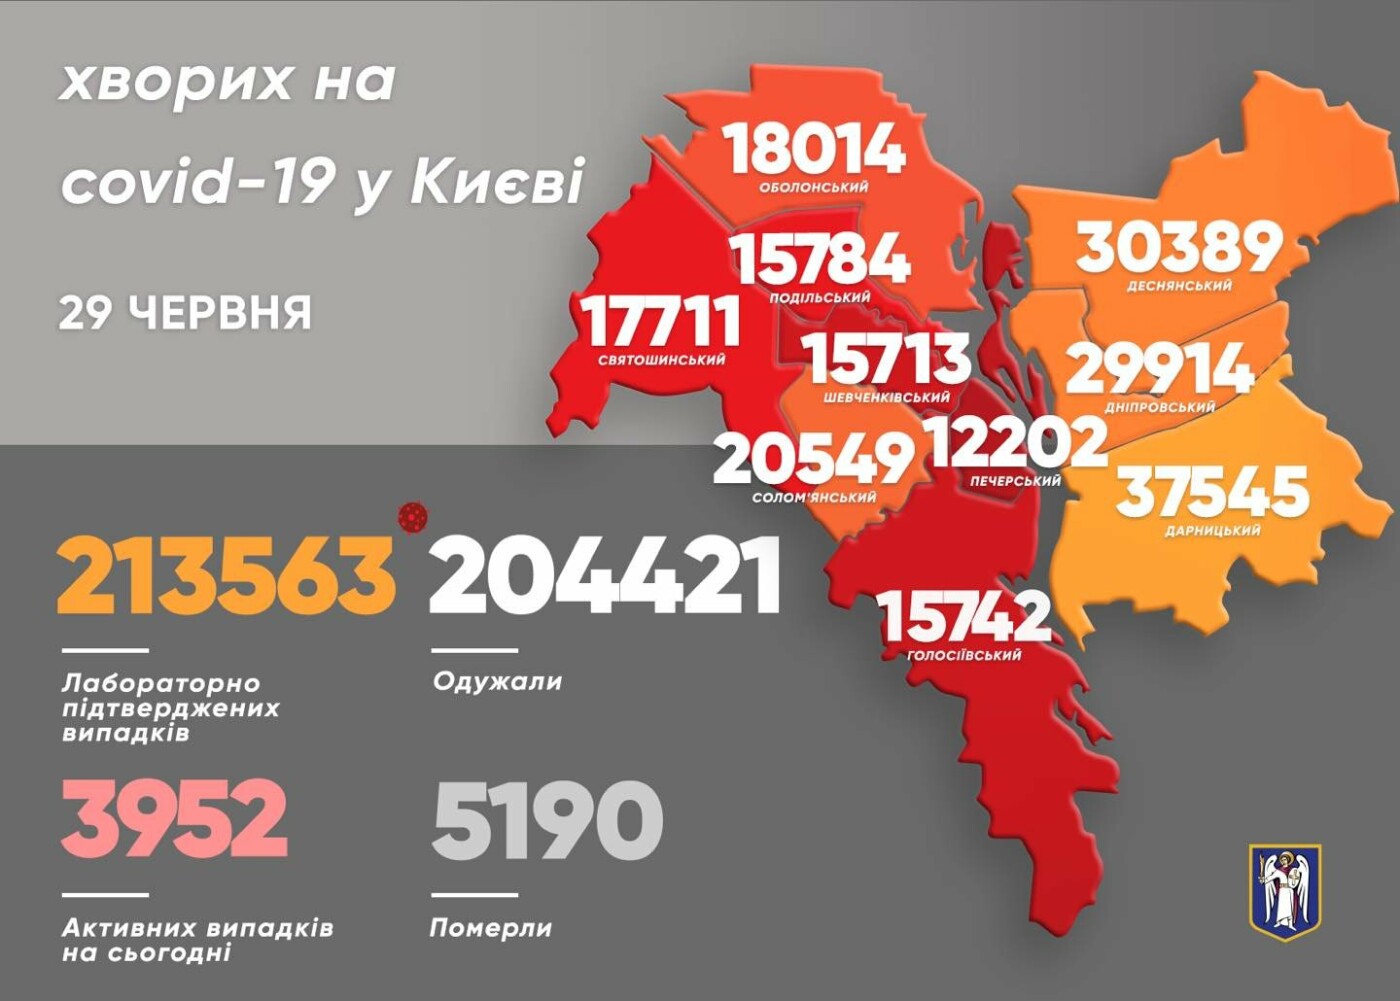 Второй день без смертей: появилась статистика коронавируса в Киеве по районам на 29 июня